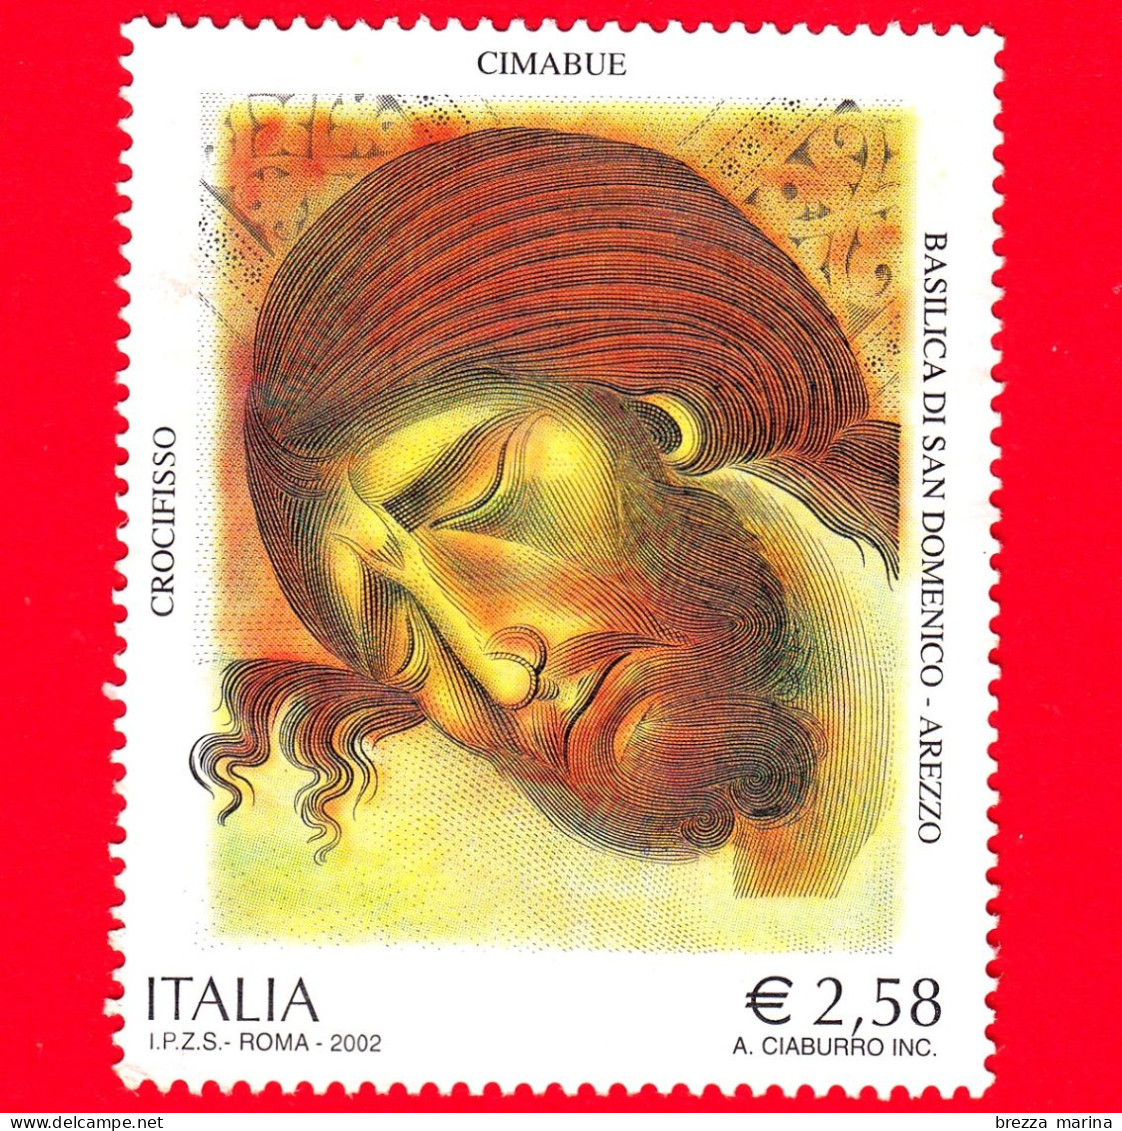 ITALIA - Usato - 2002 -  7º Centenario Della Morte Di Cimabue - Crocifisso, Opera Di Cimabue - S. Domenico, Arezzo -2,58 - 2001-10: Usati